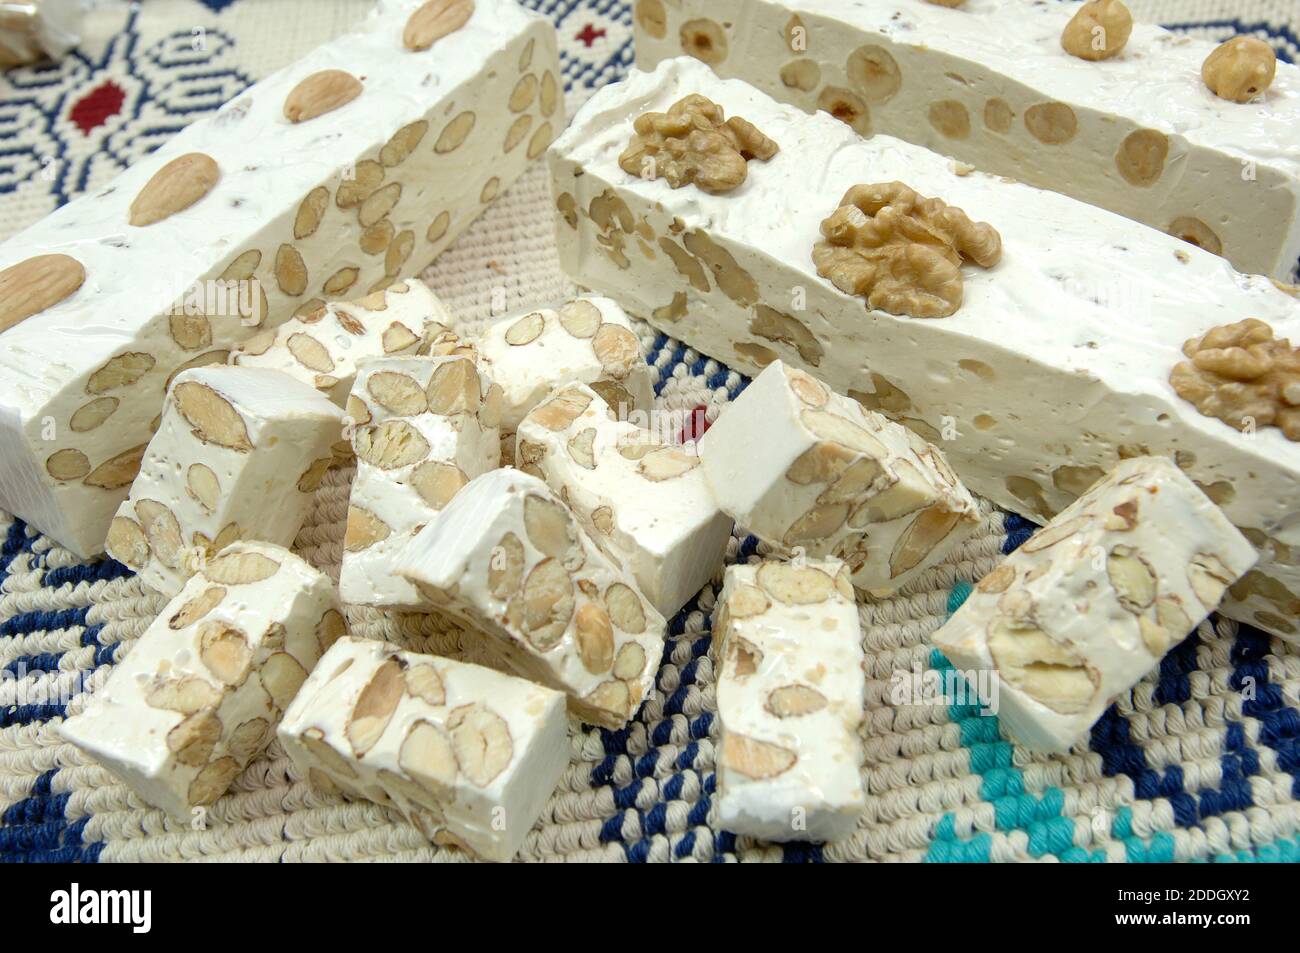 Usine artisanale de nougat mou de Tonara en Sardaigne De l'Italie fait avec des amandes et des noix Banque D'Images